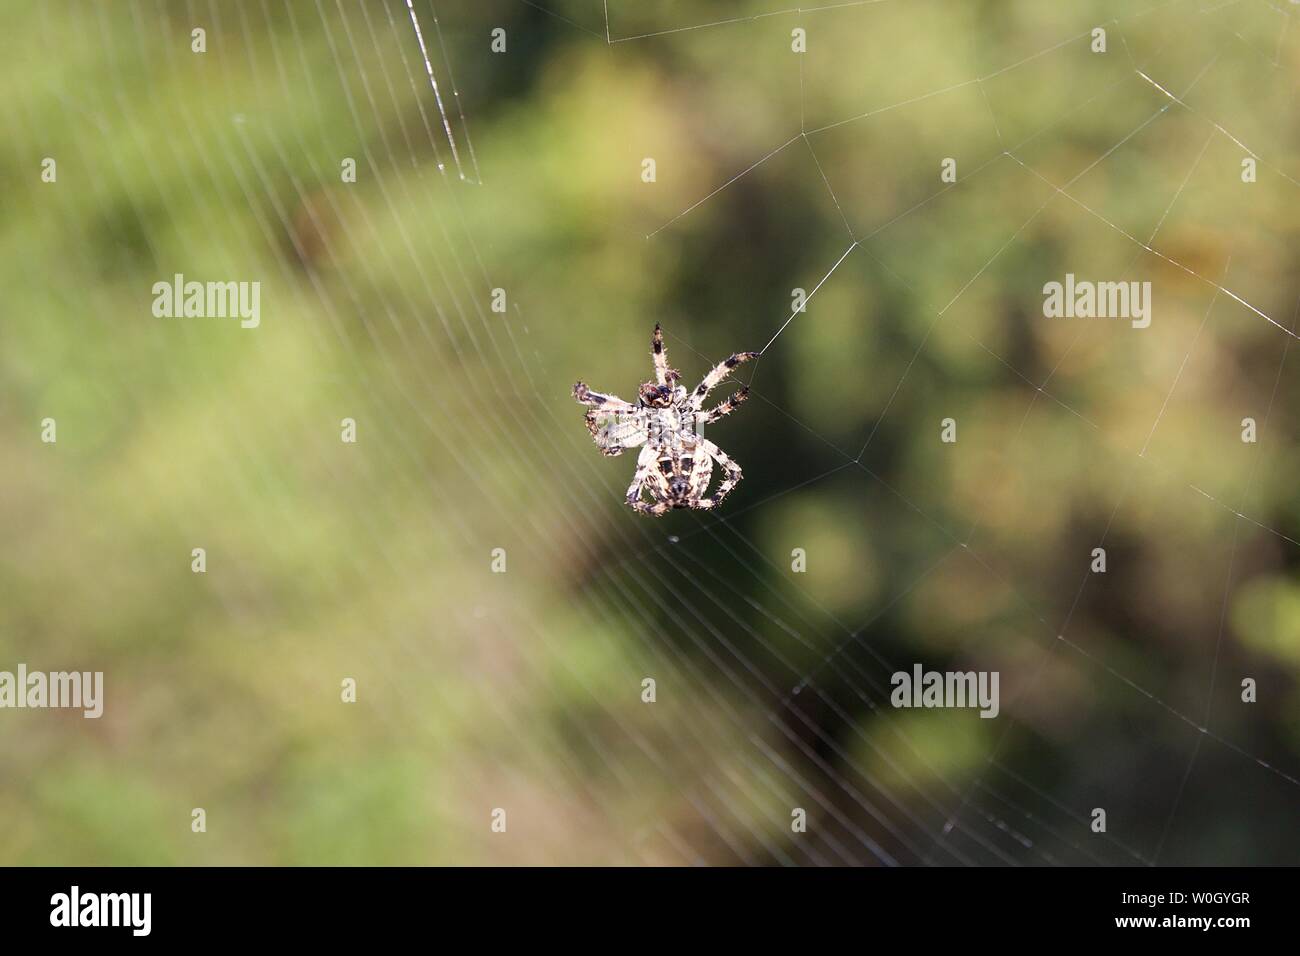 Detailansicht von unten kleine haarige Spinne in der Natur Spins a web Insekten zu fangen. Unscharfer Hintergrund der grünen Pflanzen, Sträucher und Bäume in einem Wald Stockfoto